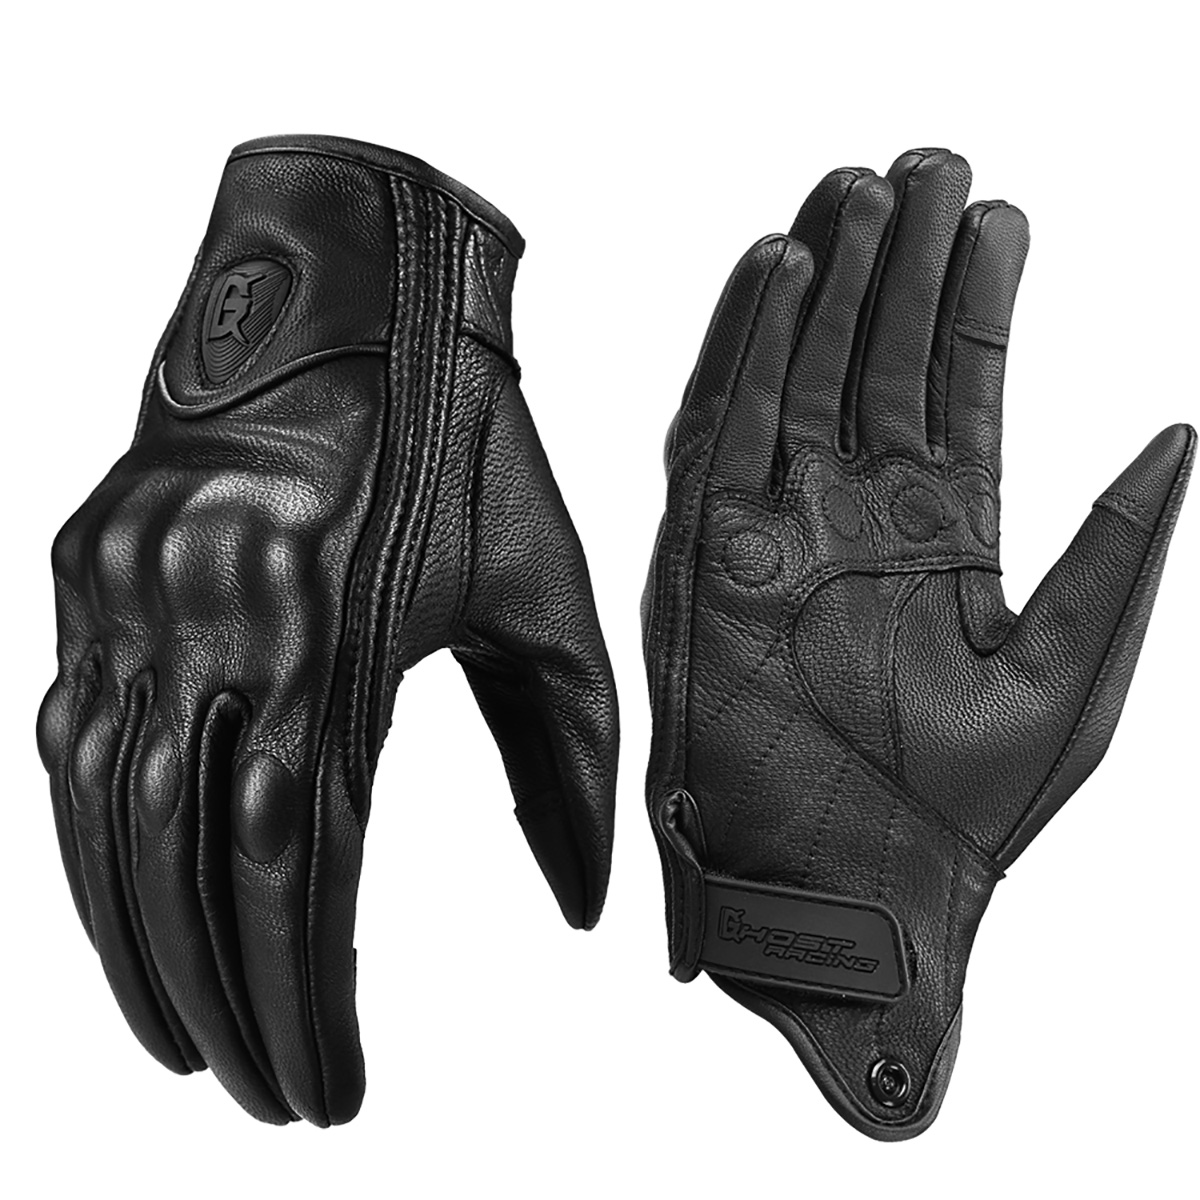 バイク グローブ メンズ レディースバイク グローブ 手袋革手袋 防水 通気 バイク用品 レーシンググローブ 2タイプ Gennsei